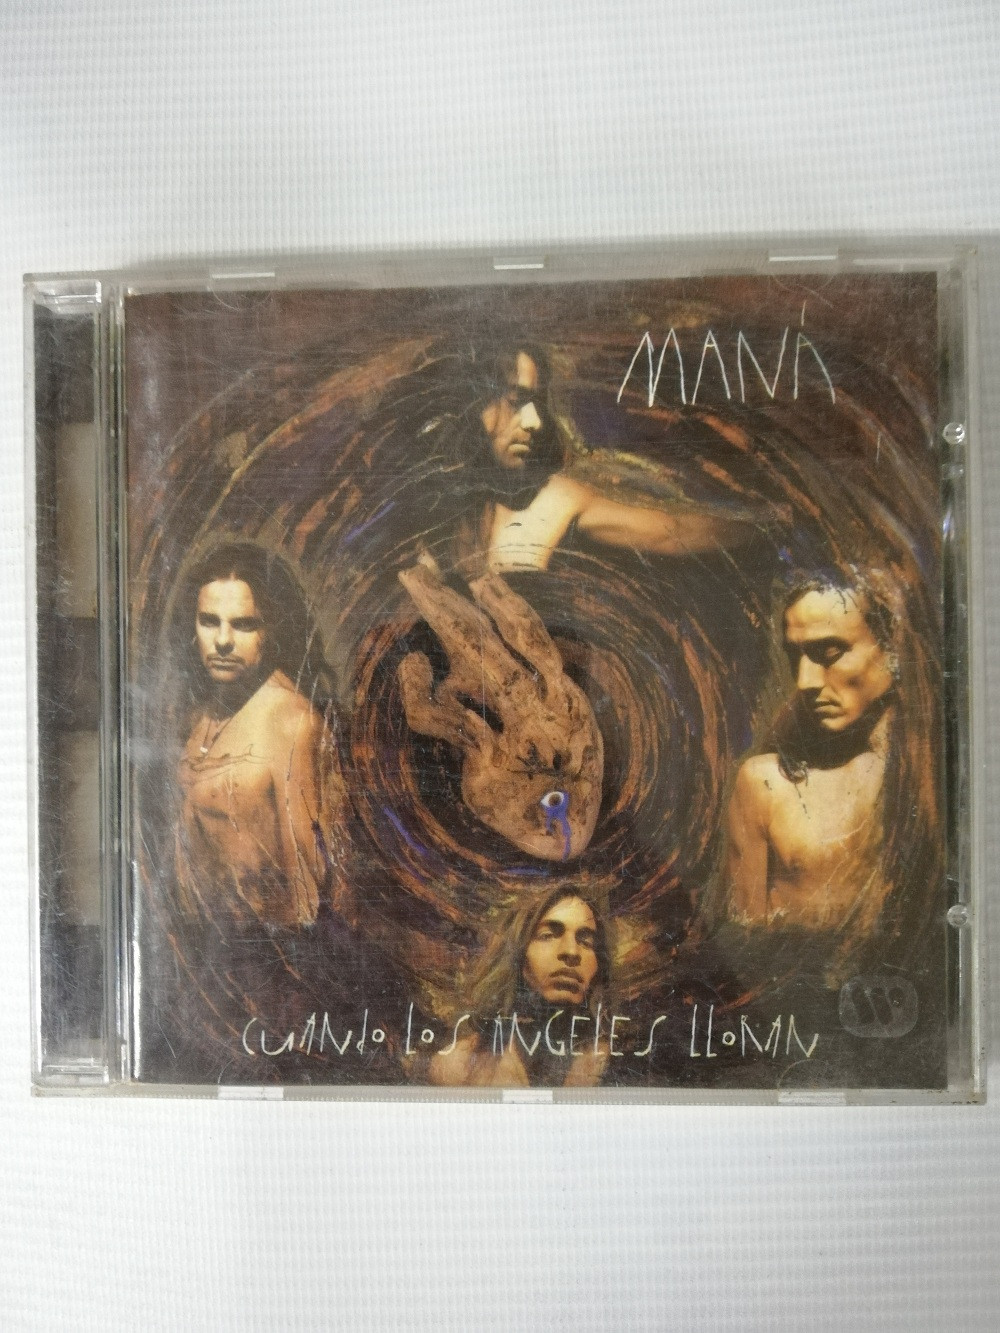 Imagen CD MANÁ - CUANDO LOS ANGELES LLORAN